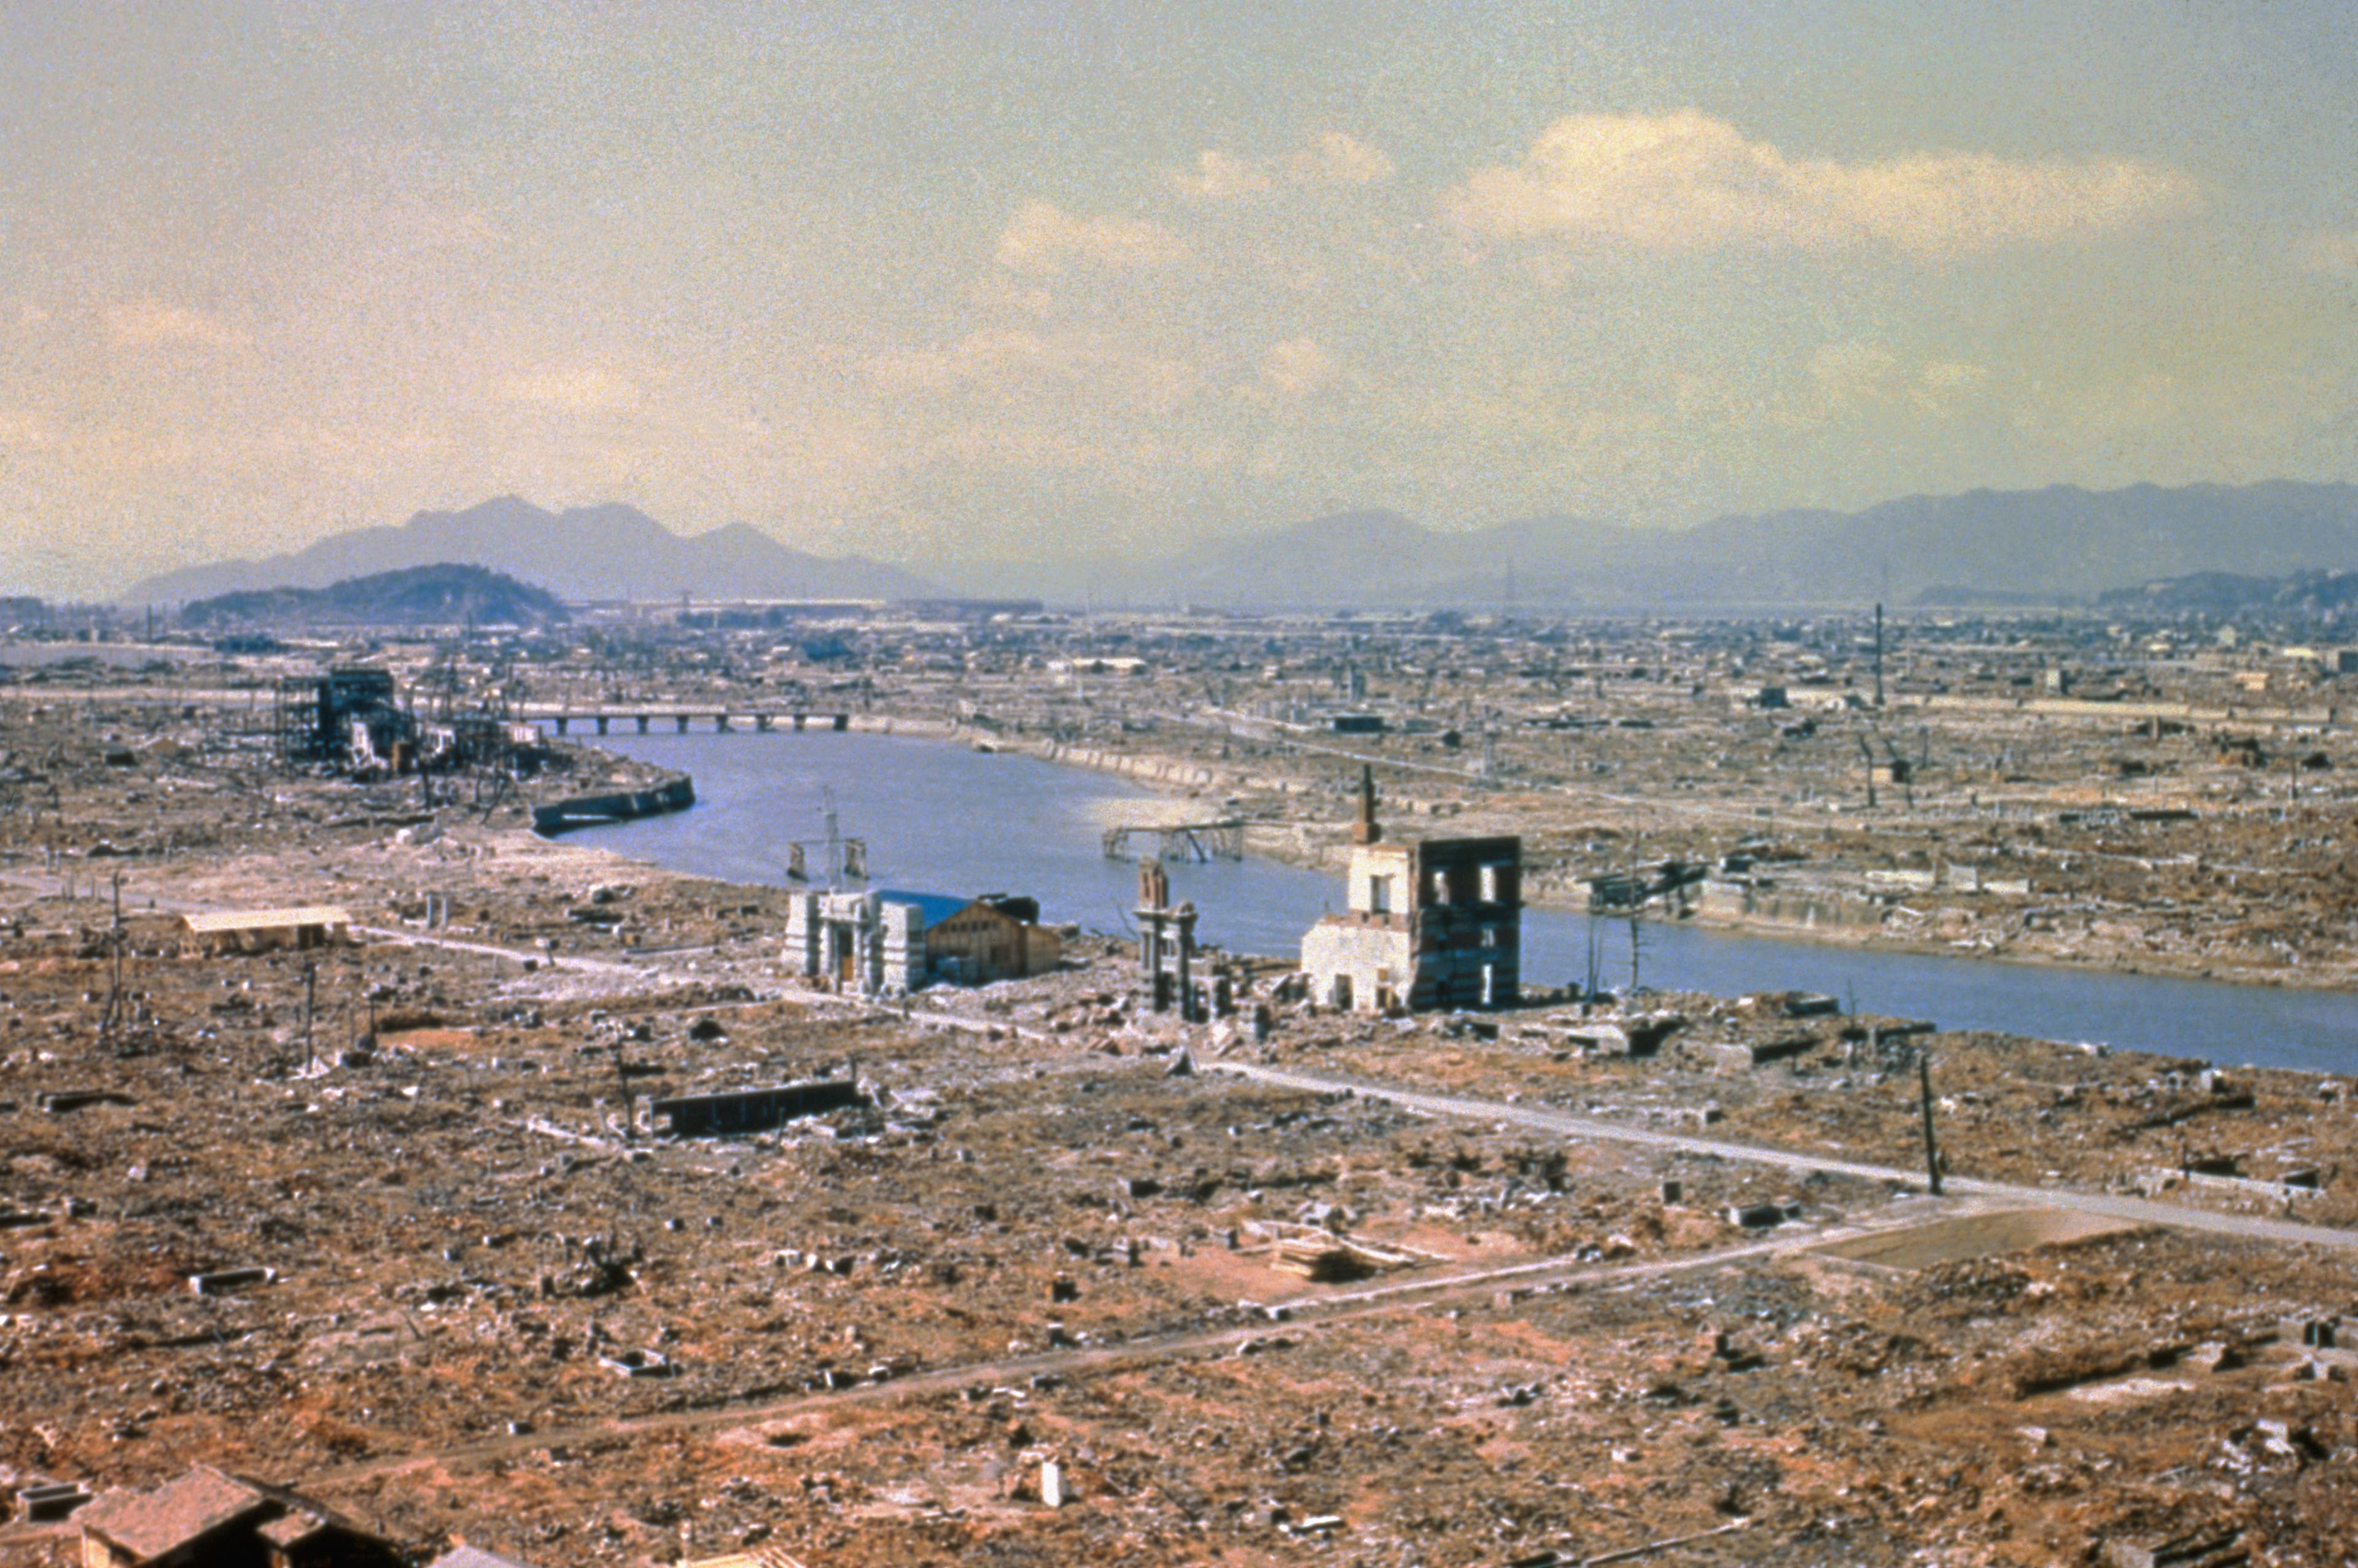 Aftermath of Hiroshima bombing, World War II, 1945